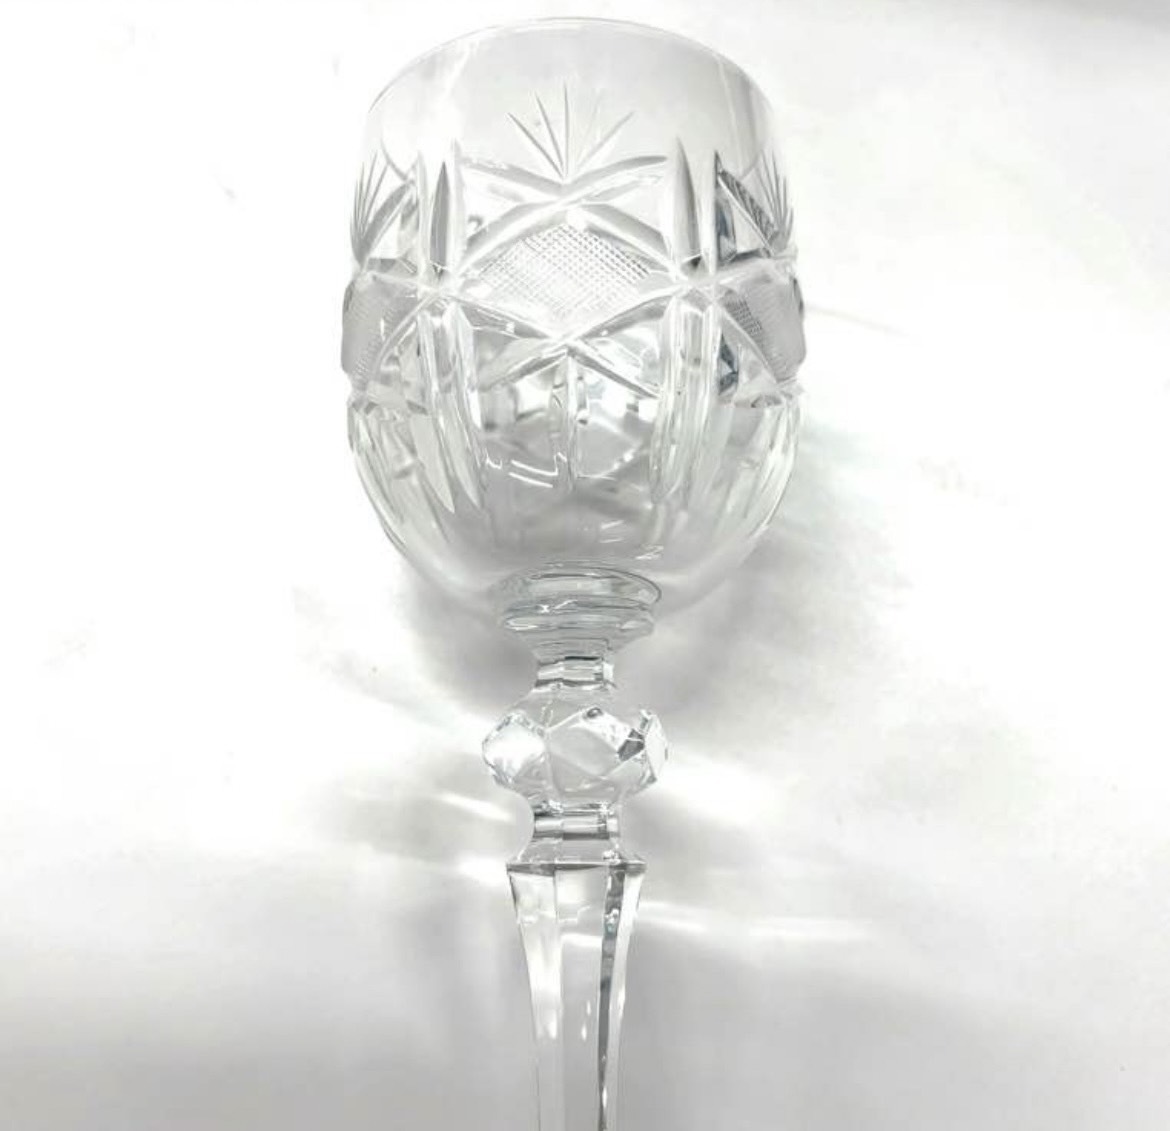 P126-W13-1074 BOHEMIA Hand-cut lead crystal ボヘミア ハンドカット クリスタルガラス ペアグラス ワイングラス 2個セット 箱あり③_画像4